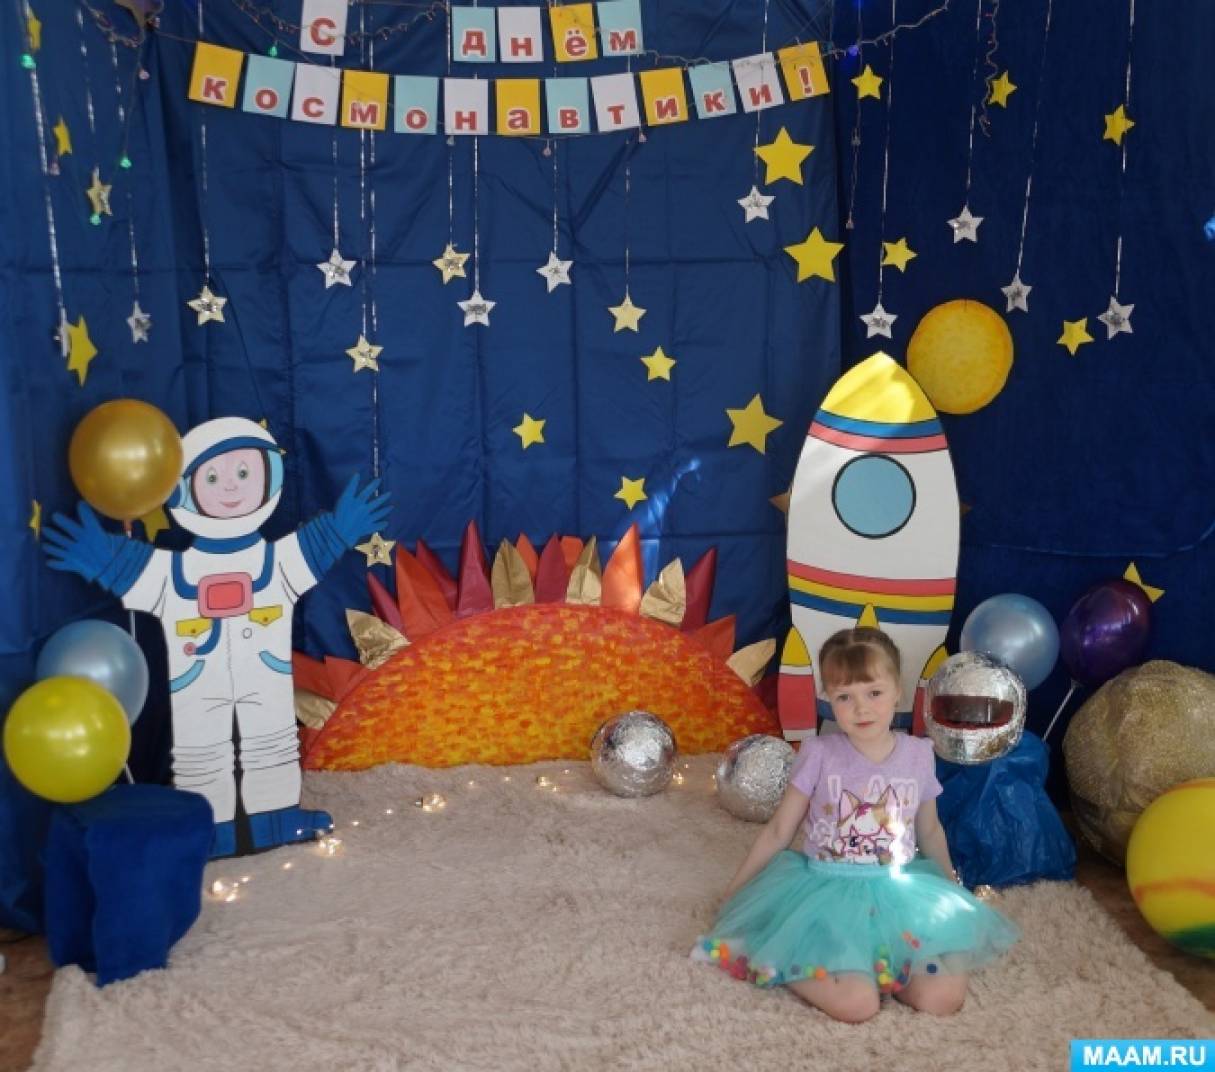 Фотозона на день космонавтики в детском саду. Фотозона космос в детском саду. Фото зона ко Дню космонавтики в детском саду. Оформление фотозоны космос в детском саду.